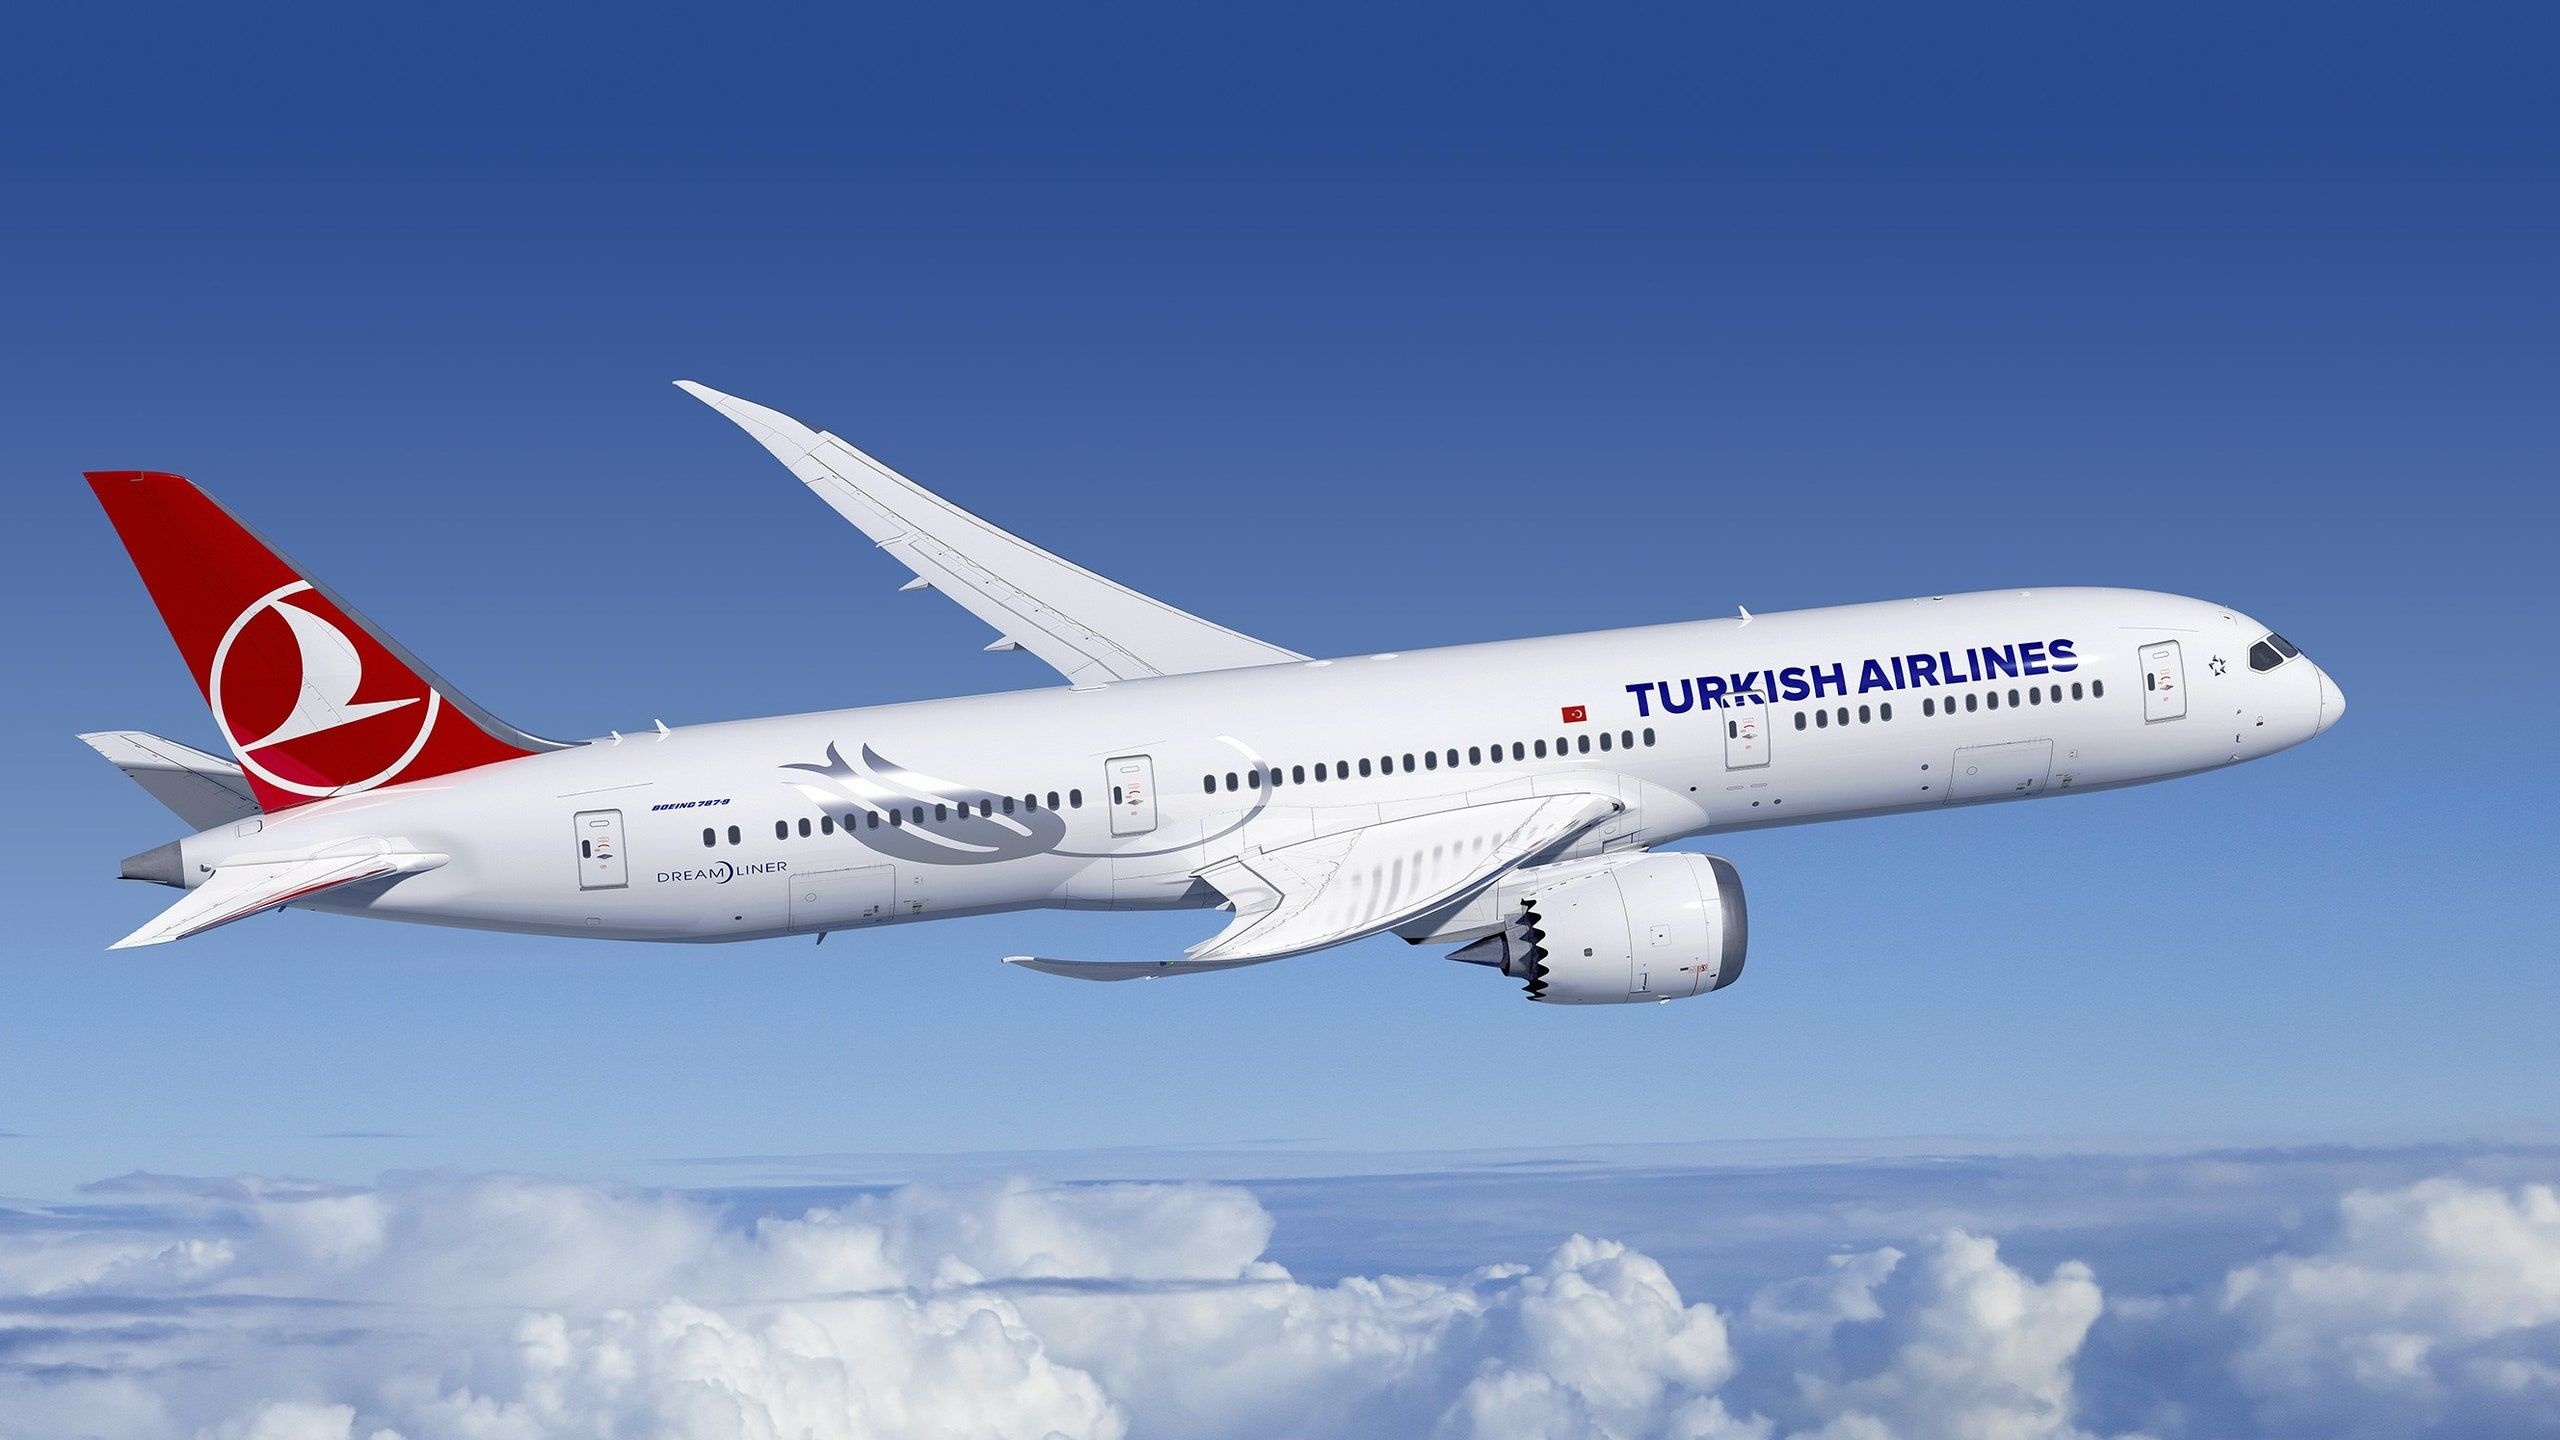 Turkish Airlines, Desktop wallpapers, Stunning visuals, Airline's pride, 2560x1440 HD Desktop